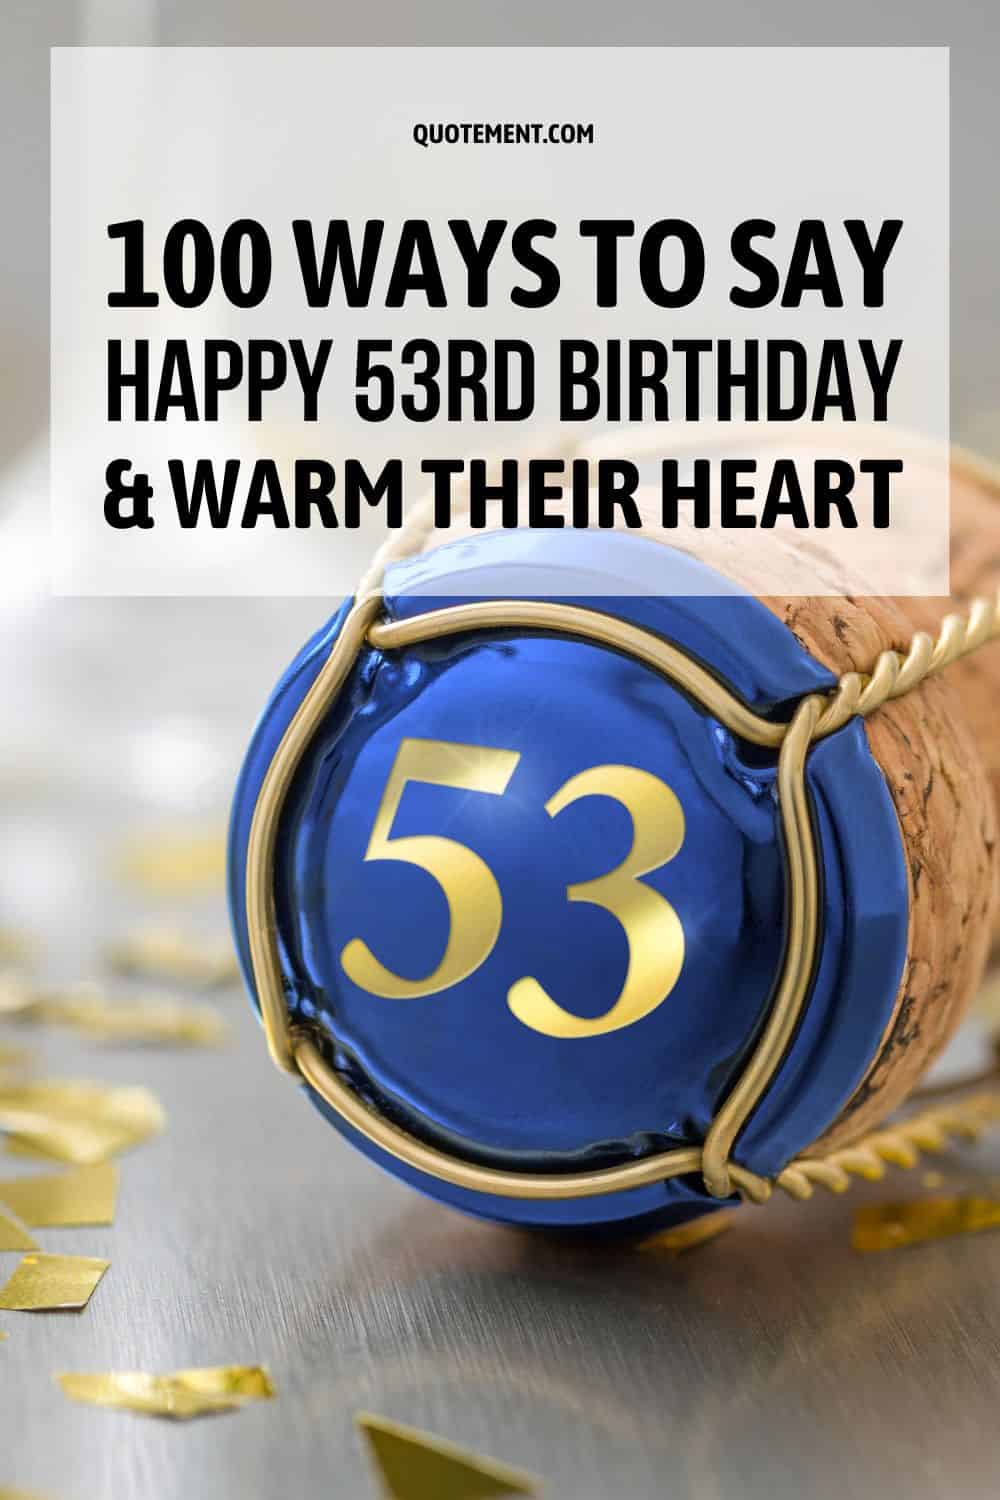 100 formas de felicitarles el 53 cumpleaños y calentarles el corazón